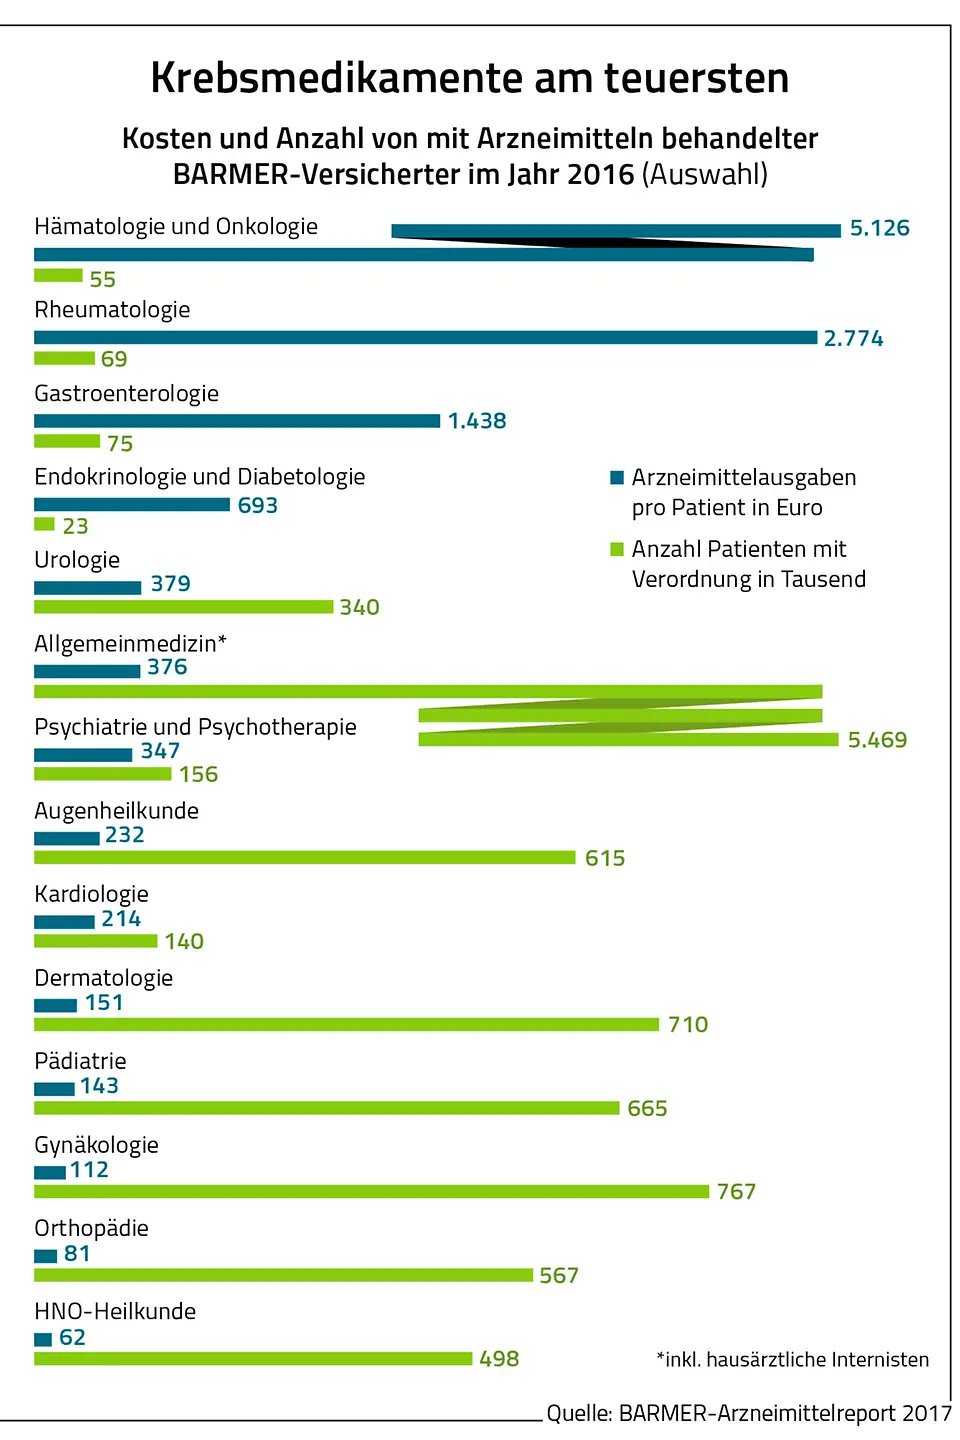 Die Grafik zeigt die Kosten und Anzahl von mit Arzneimitteln behandelter Barmer-Versicherten im Jahr 2016.